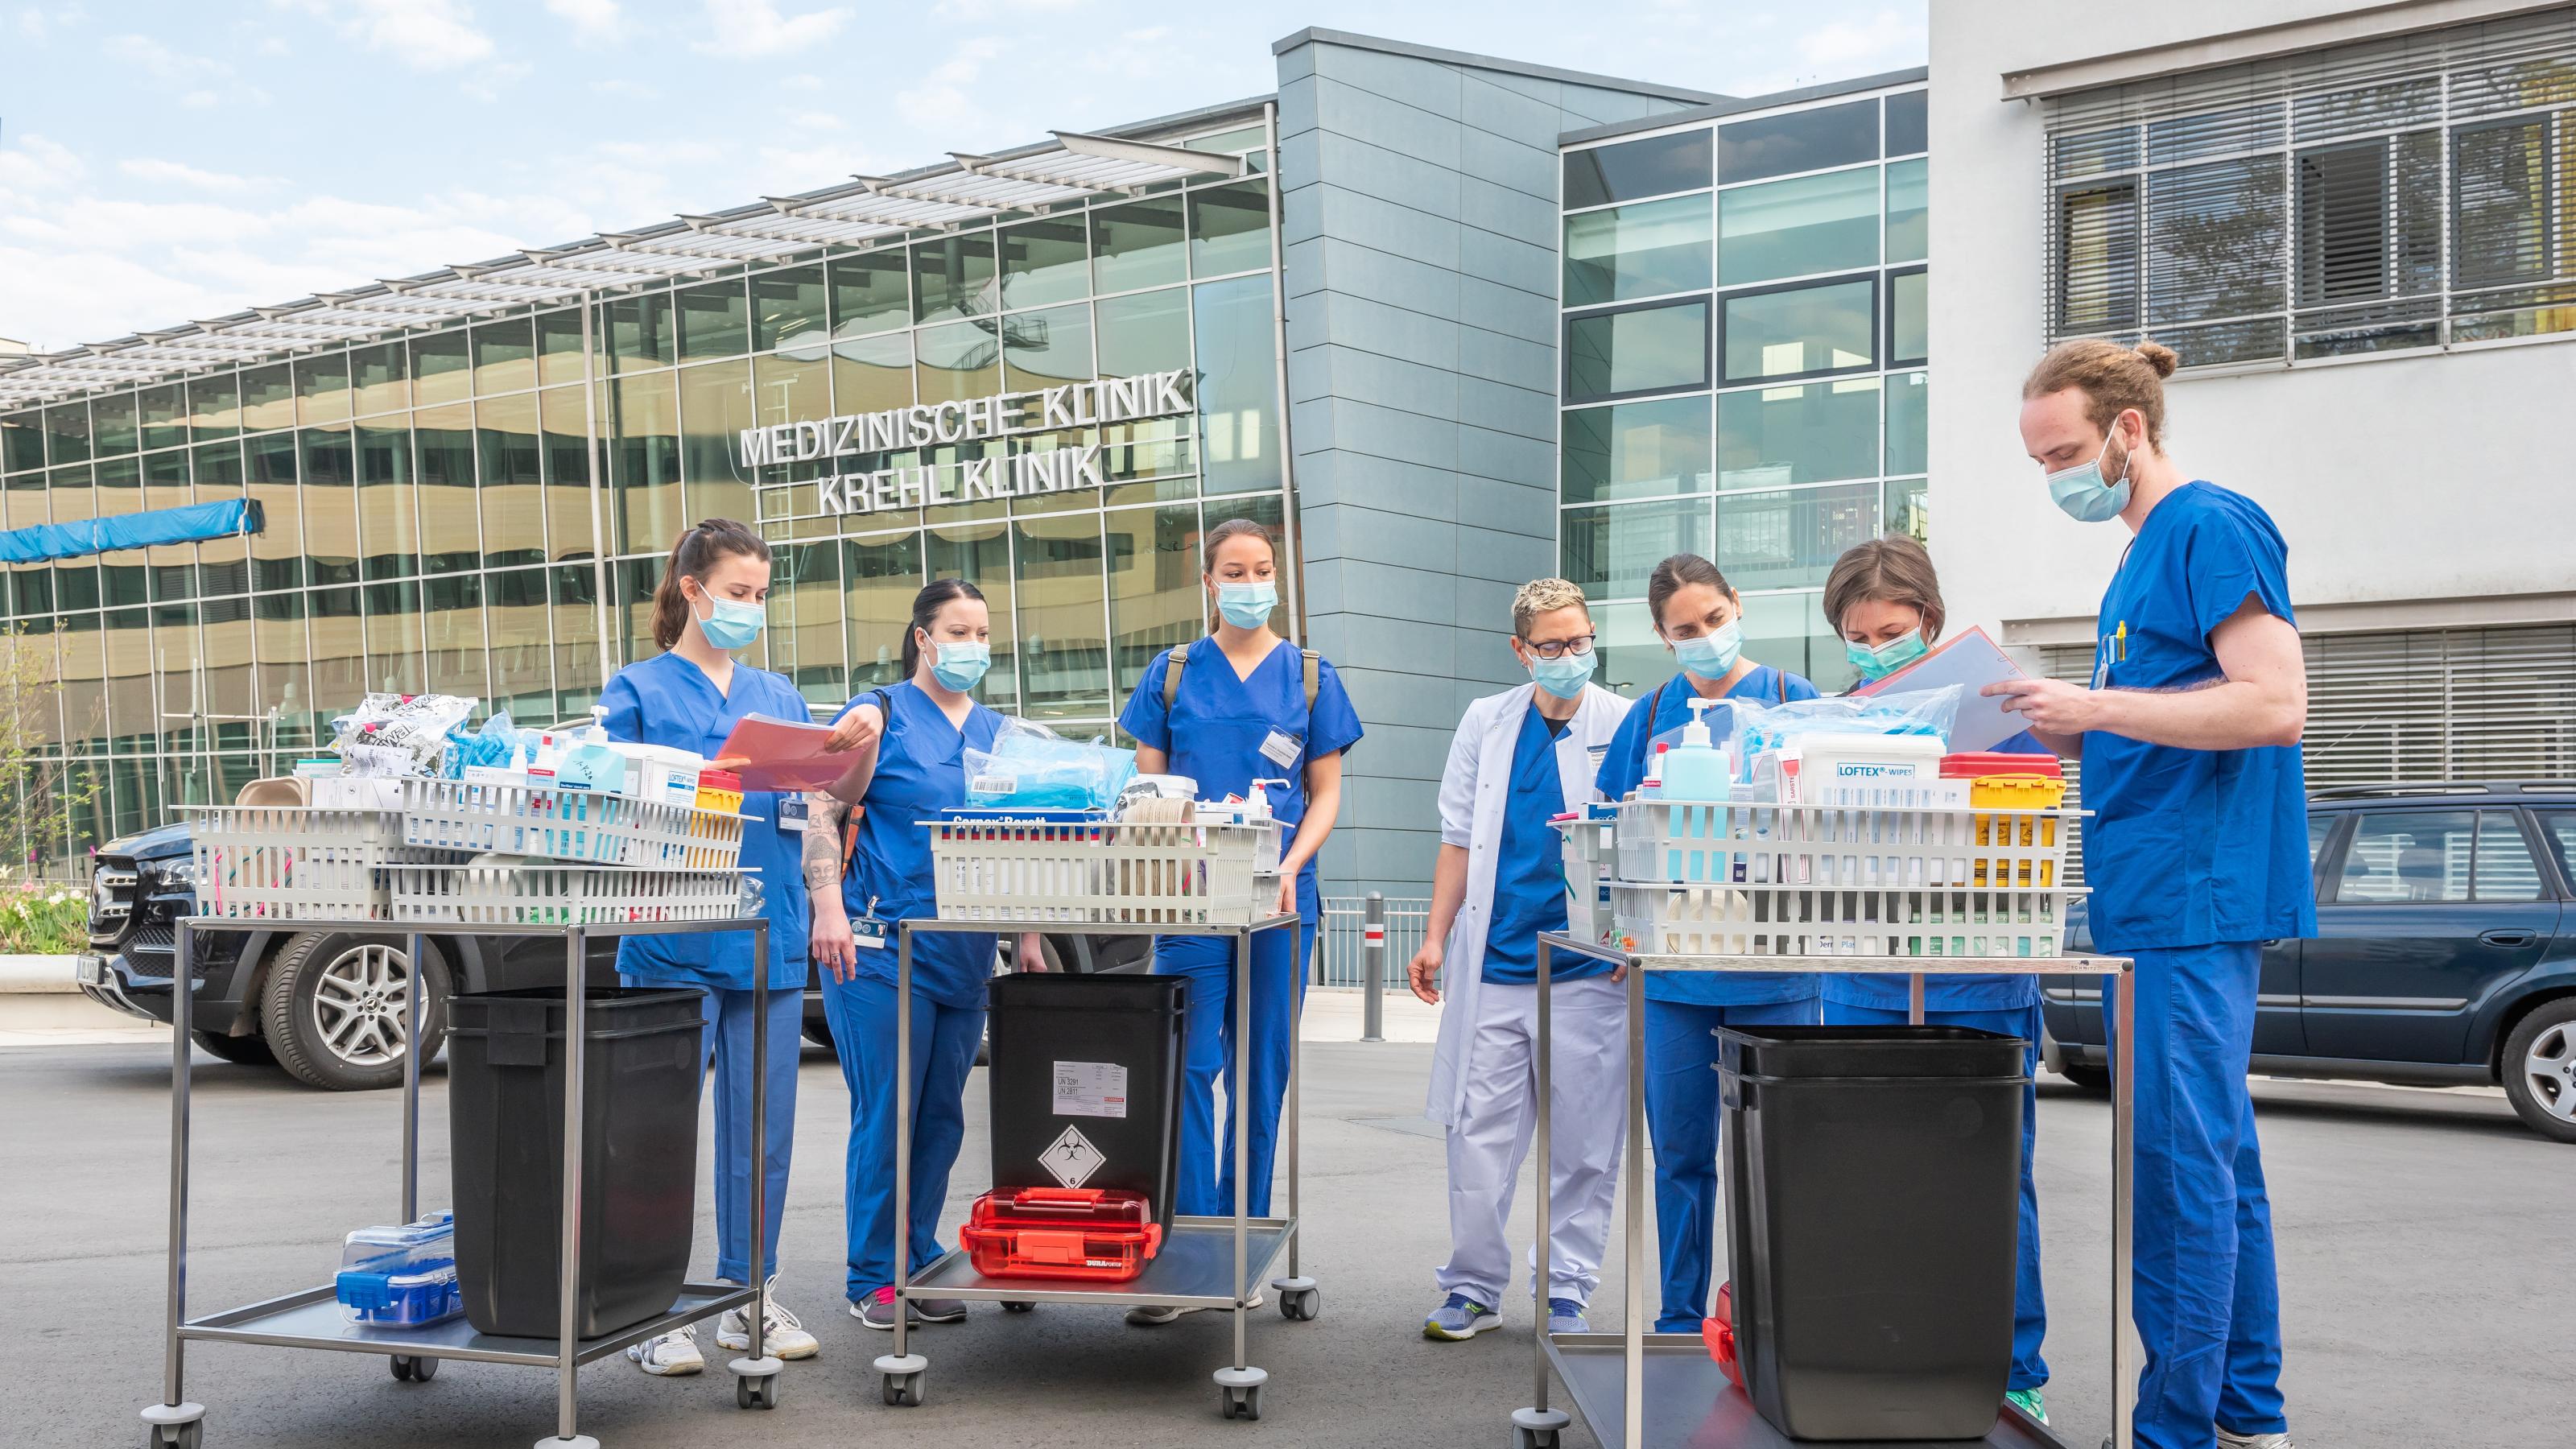 Medizinstudierende in blauer Arbeitskleidung und Mund-Nasenschutz bereiten sich auf eine Fahrt zu SARS-CoV-Infizierten vor (Coronataxi). Sie stehen vor einem Gebäude der Universitätsklinik Heidelberg